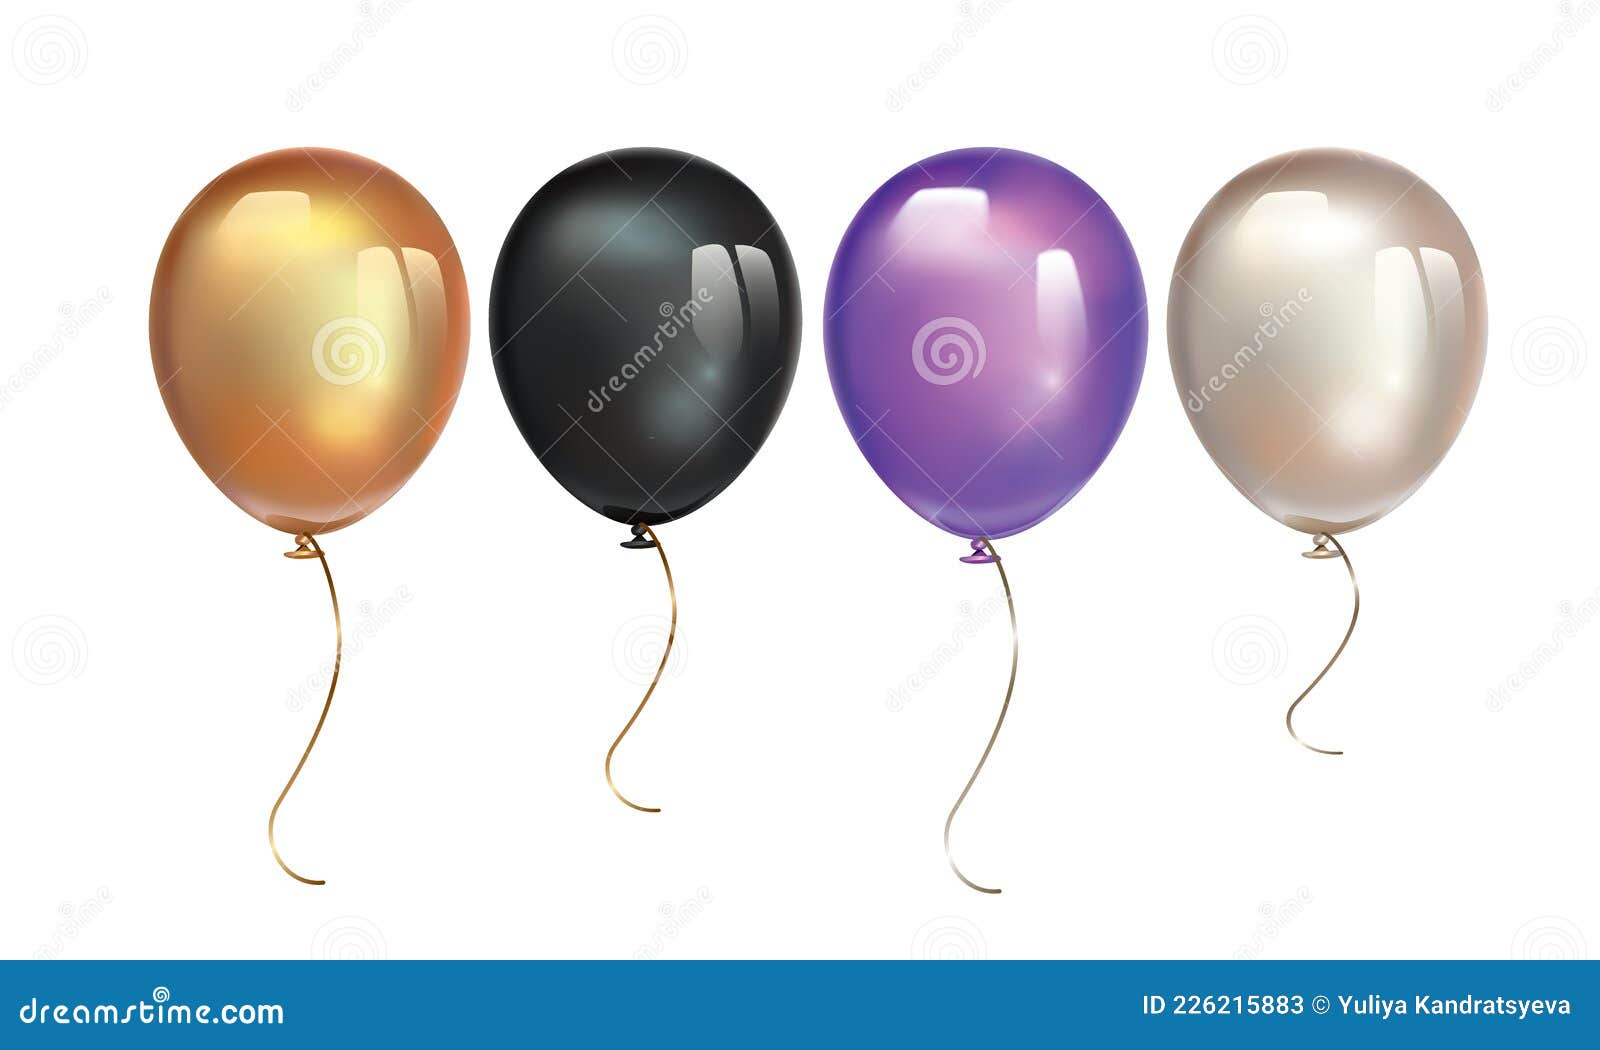 https://thumbs.dreamstime.com/z/ballon-noir-ultra-violet-et-perle-avec-reflet-isol%C3%A9-sur-fond-blanc-jeu-de-d-anniversaire-gonflable-%C3%A0-air-volant-vectoriel-226215883.jpg